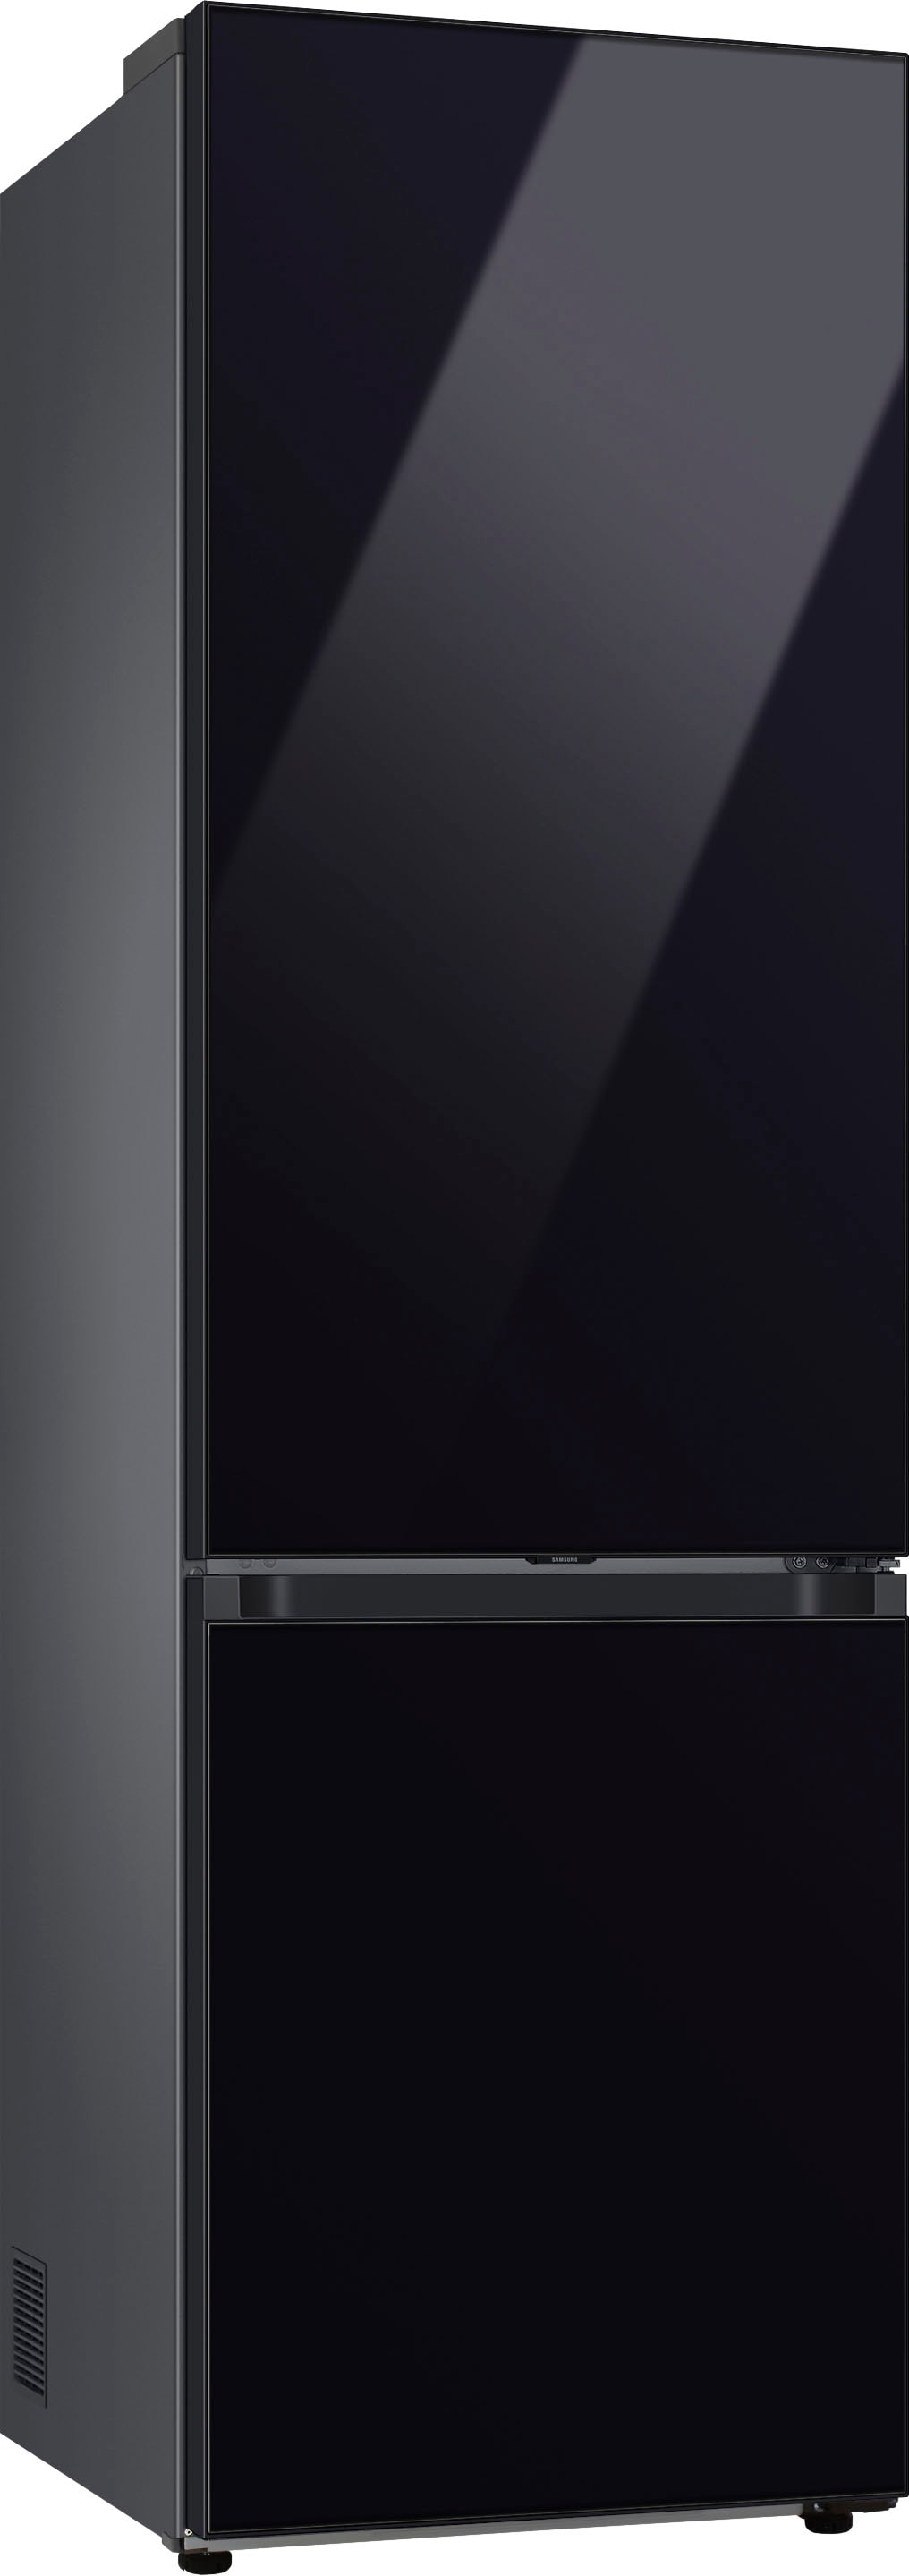 Samsung Kühl-/Gefrierkombination »RL38C6B6C22«, RL38C6B6C22, 203 cm hoch, 59 ,5 cm breit online kaufen